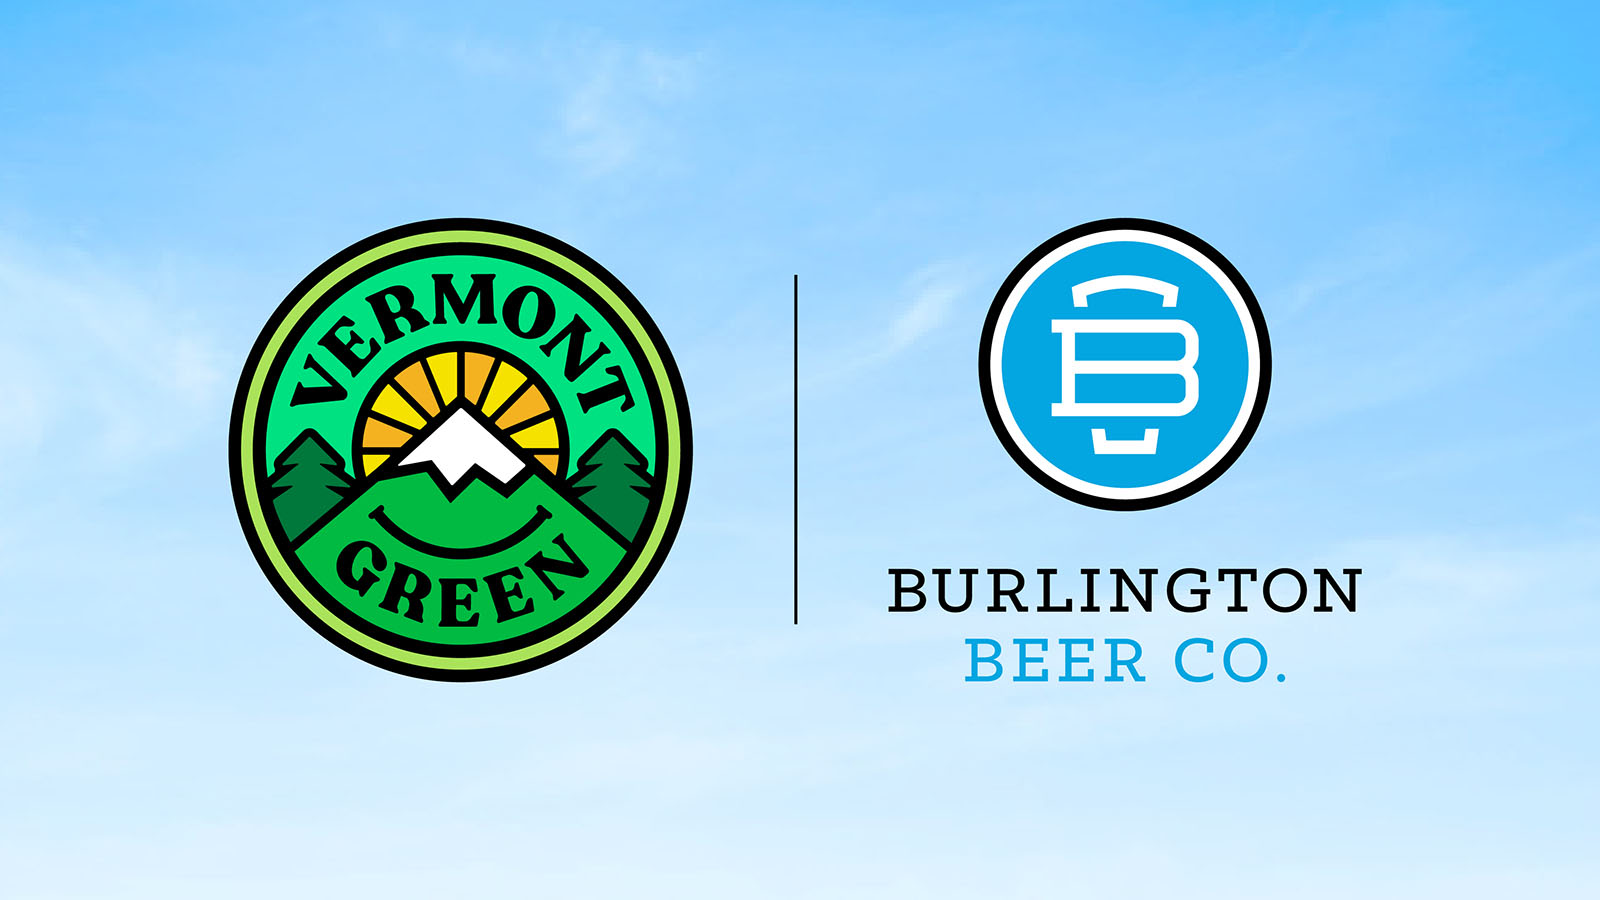 Burlington Beer Co.